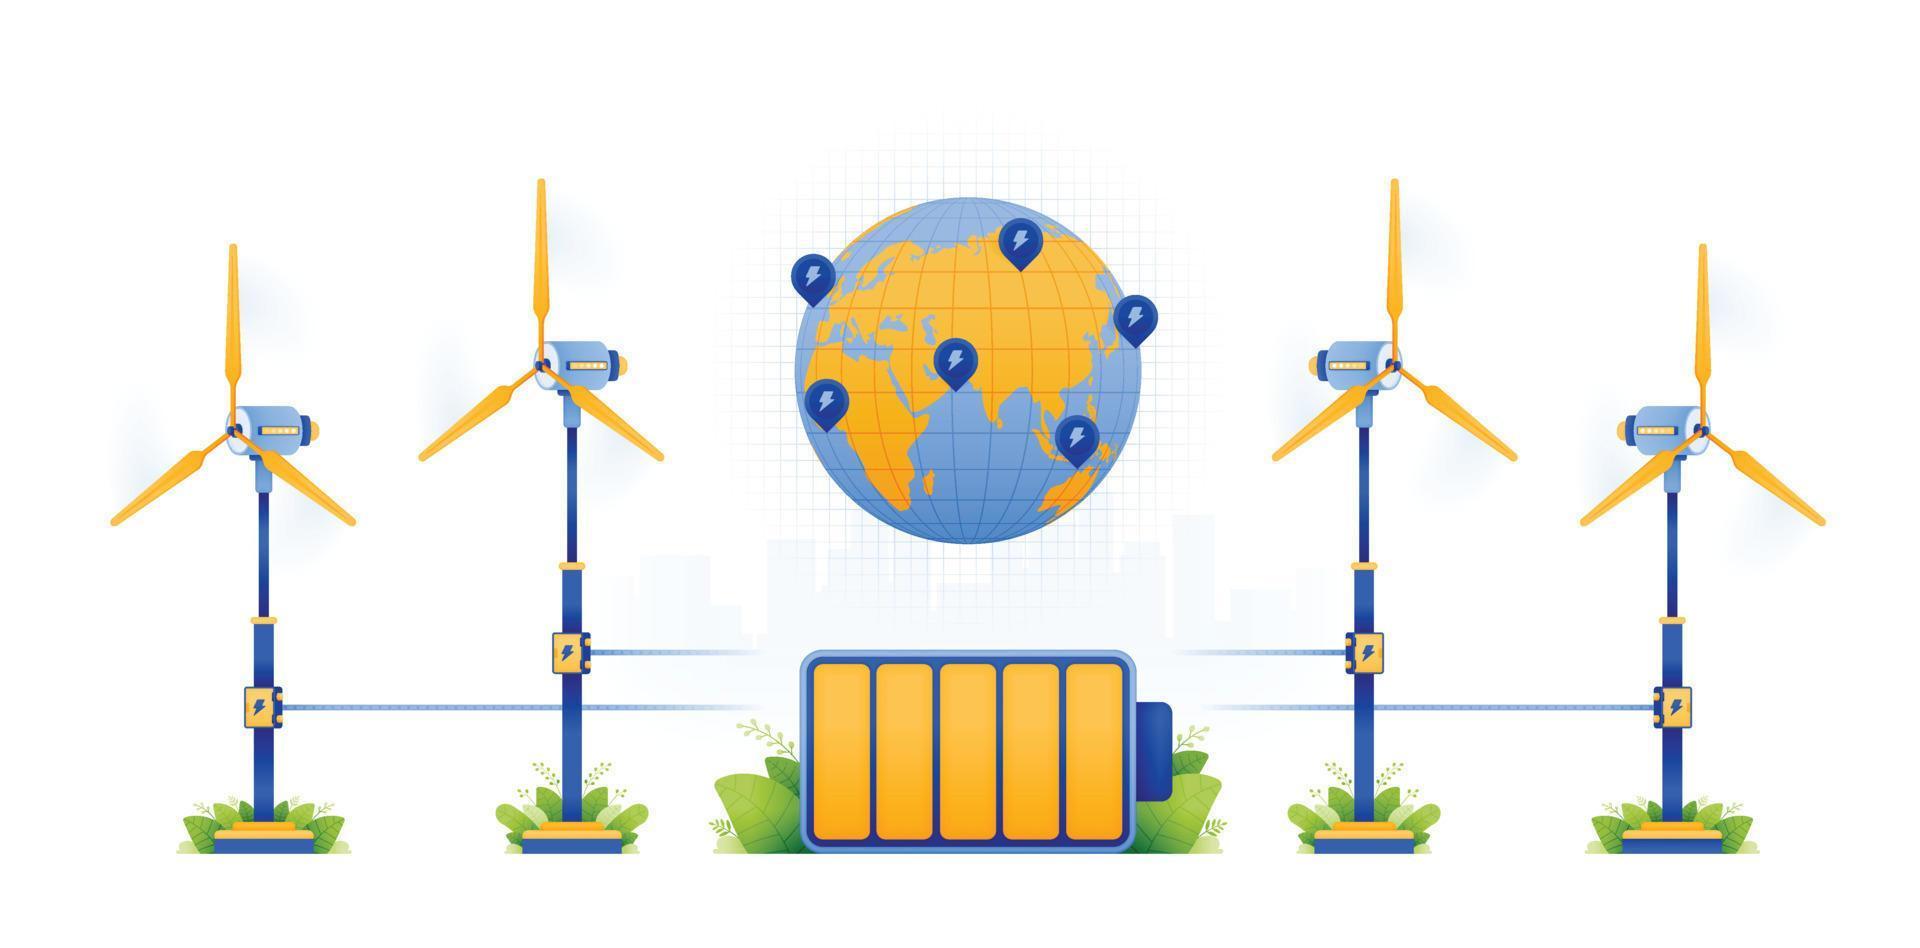 Illustrationsdesign von Windmühlen erneuerbare Energie. Laden von Energie in eine emissionsfreie Batterie. Erde mit nachhaltigerem Strom. kann für website, werbung, poster, broschüre, flyer verwendet werden vektor